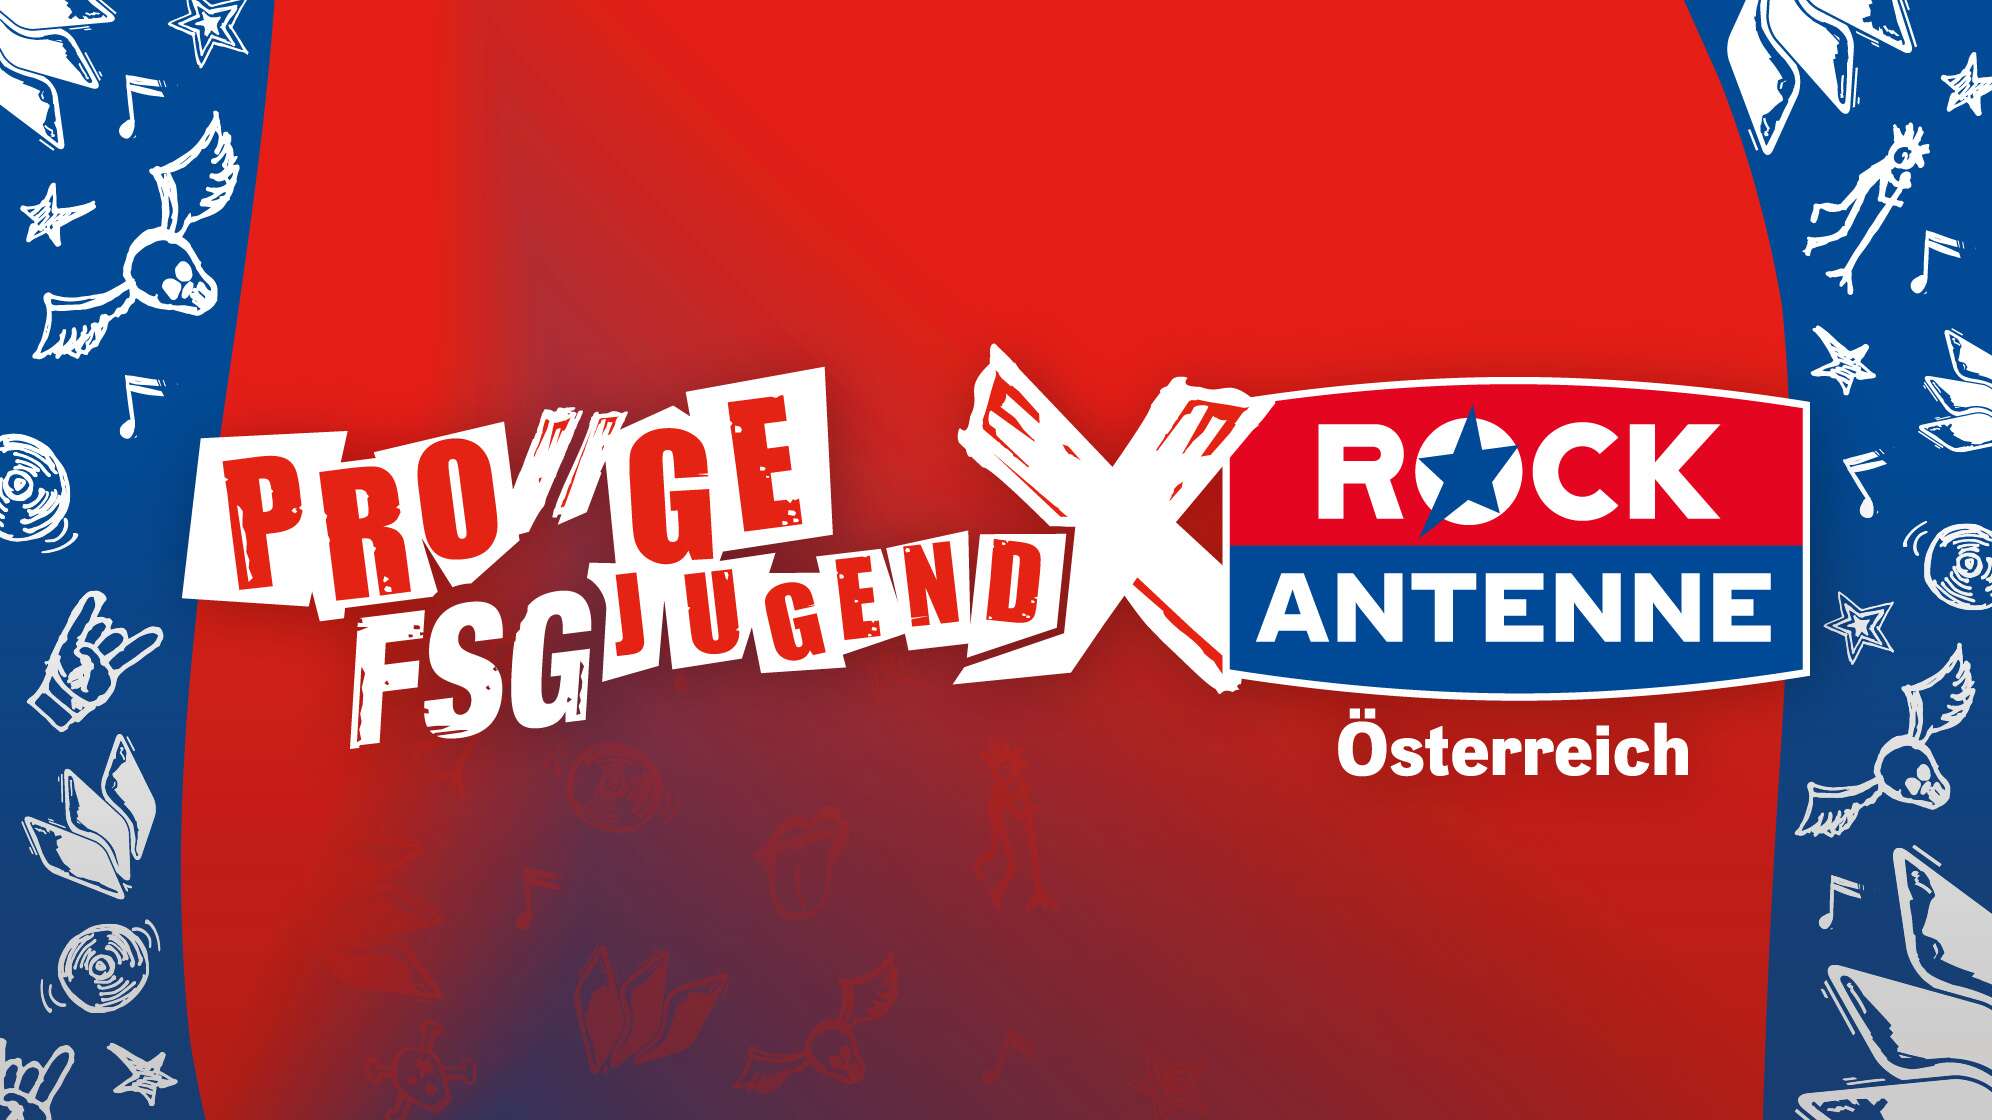 Logos von PRO-GE Jugend und ROCK ANTENNE Österreich vor rotem Hintergrund